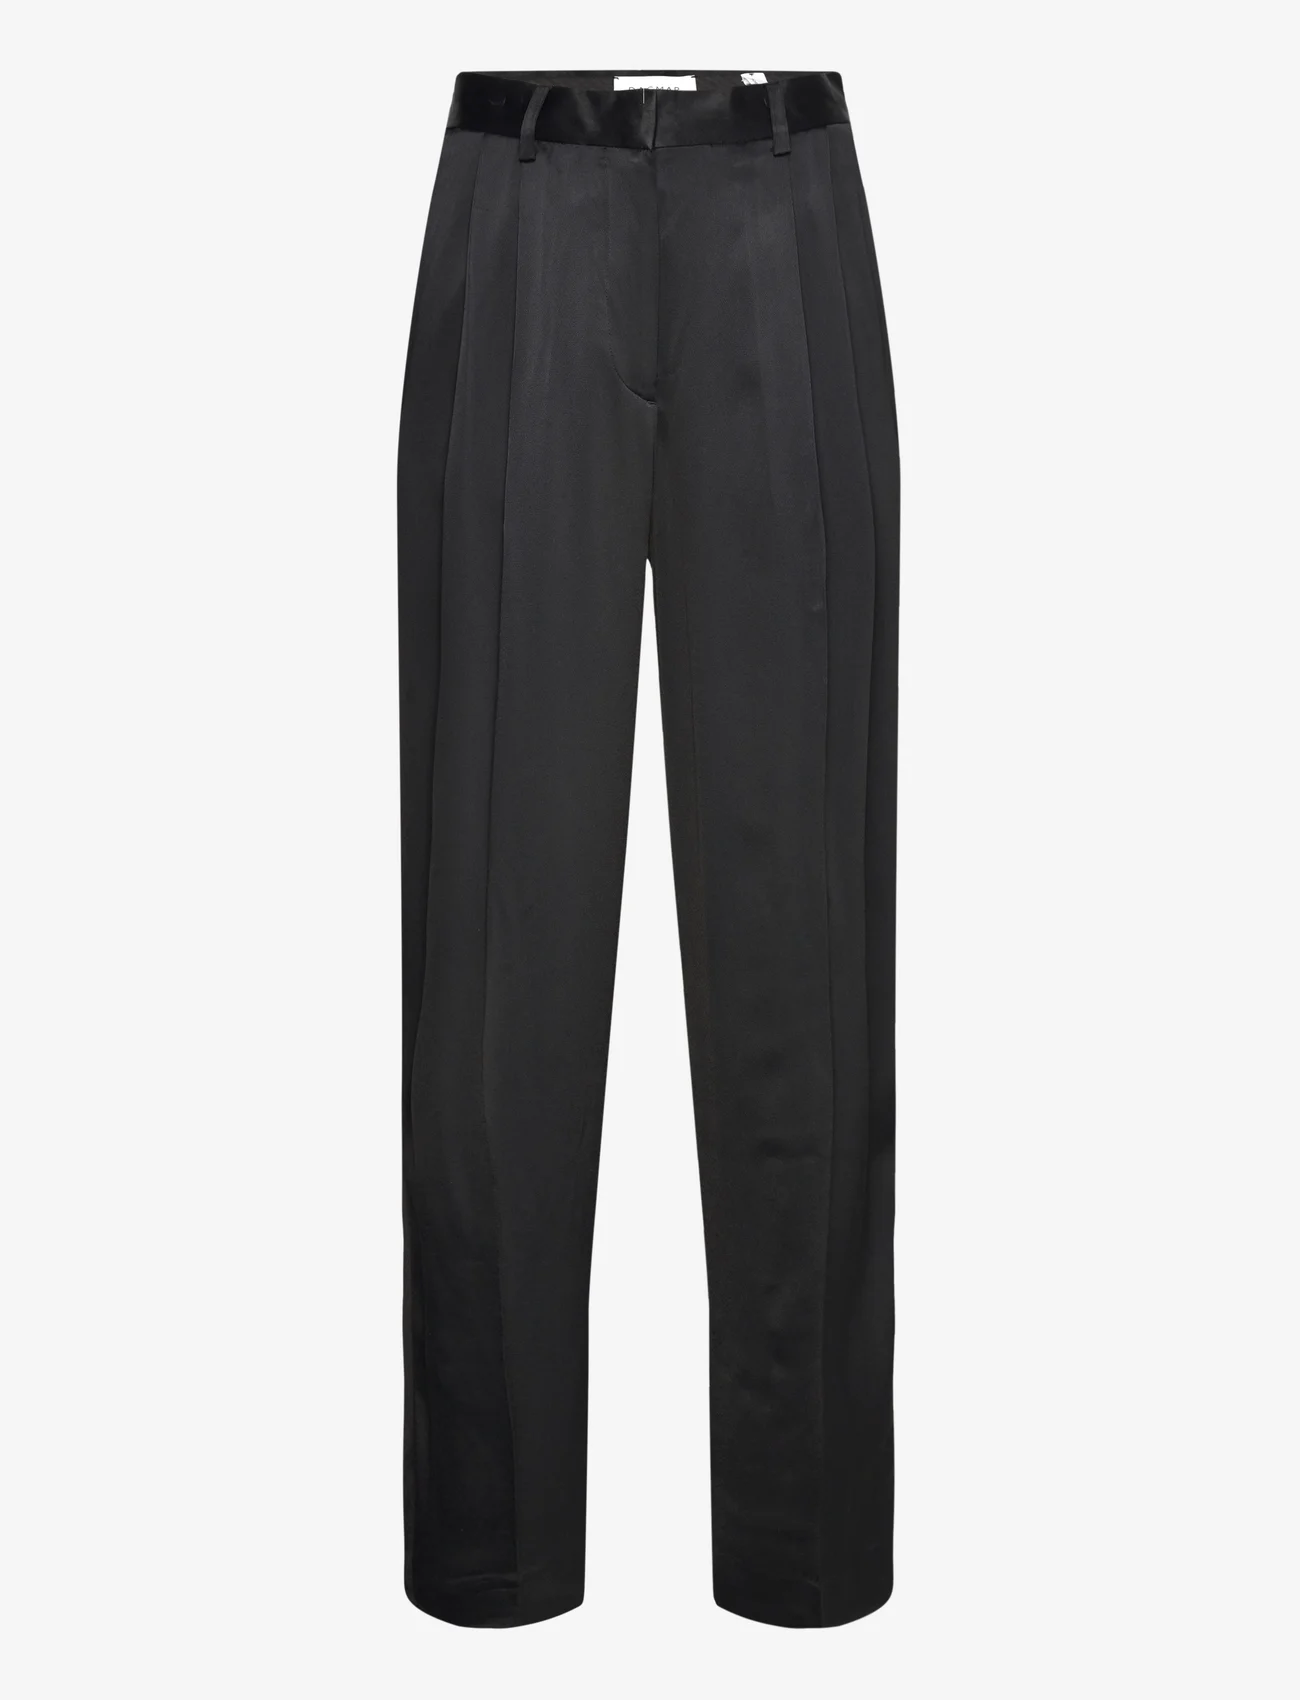 House Of Dagmar - Shiny wide suit pant - dalykinio stiliaus kelnės - black - 0